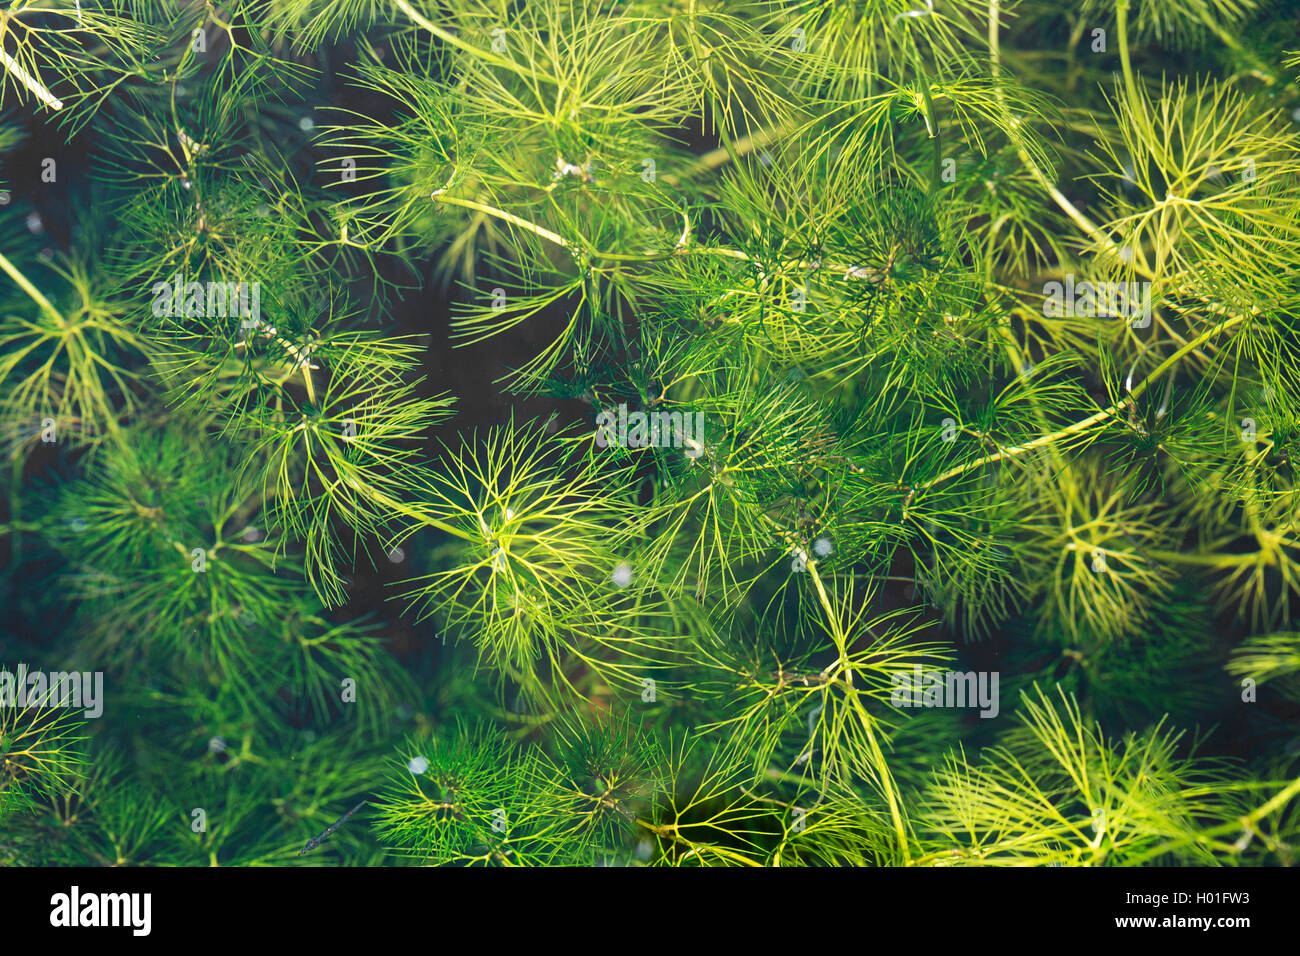 common hornwort, rigid hornwort (Ceratophyllum demersum), leaves, Germany Stock Photo